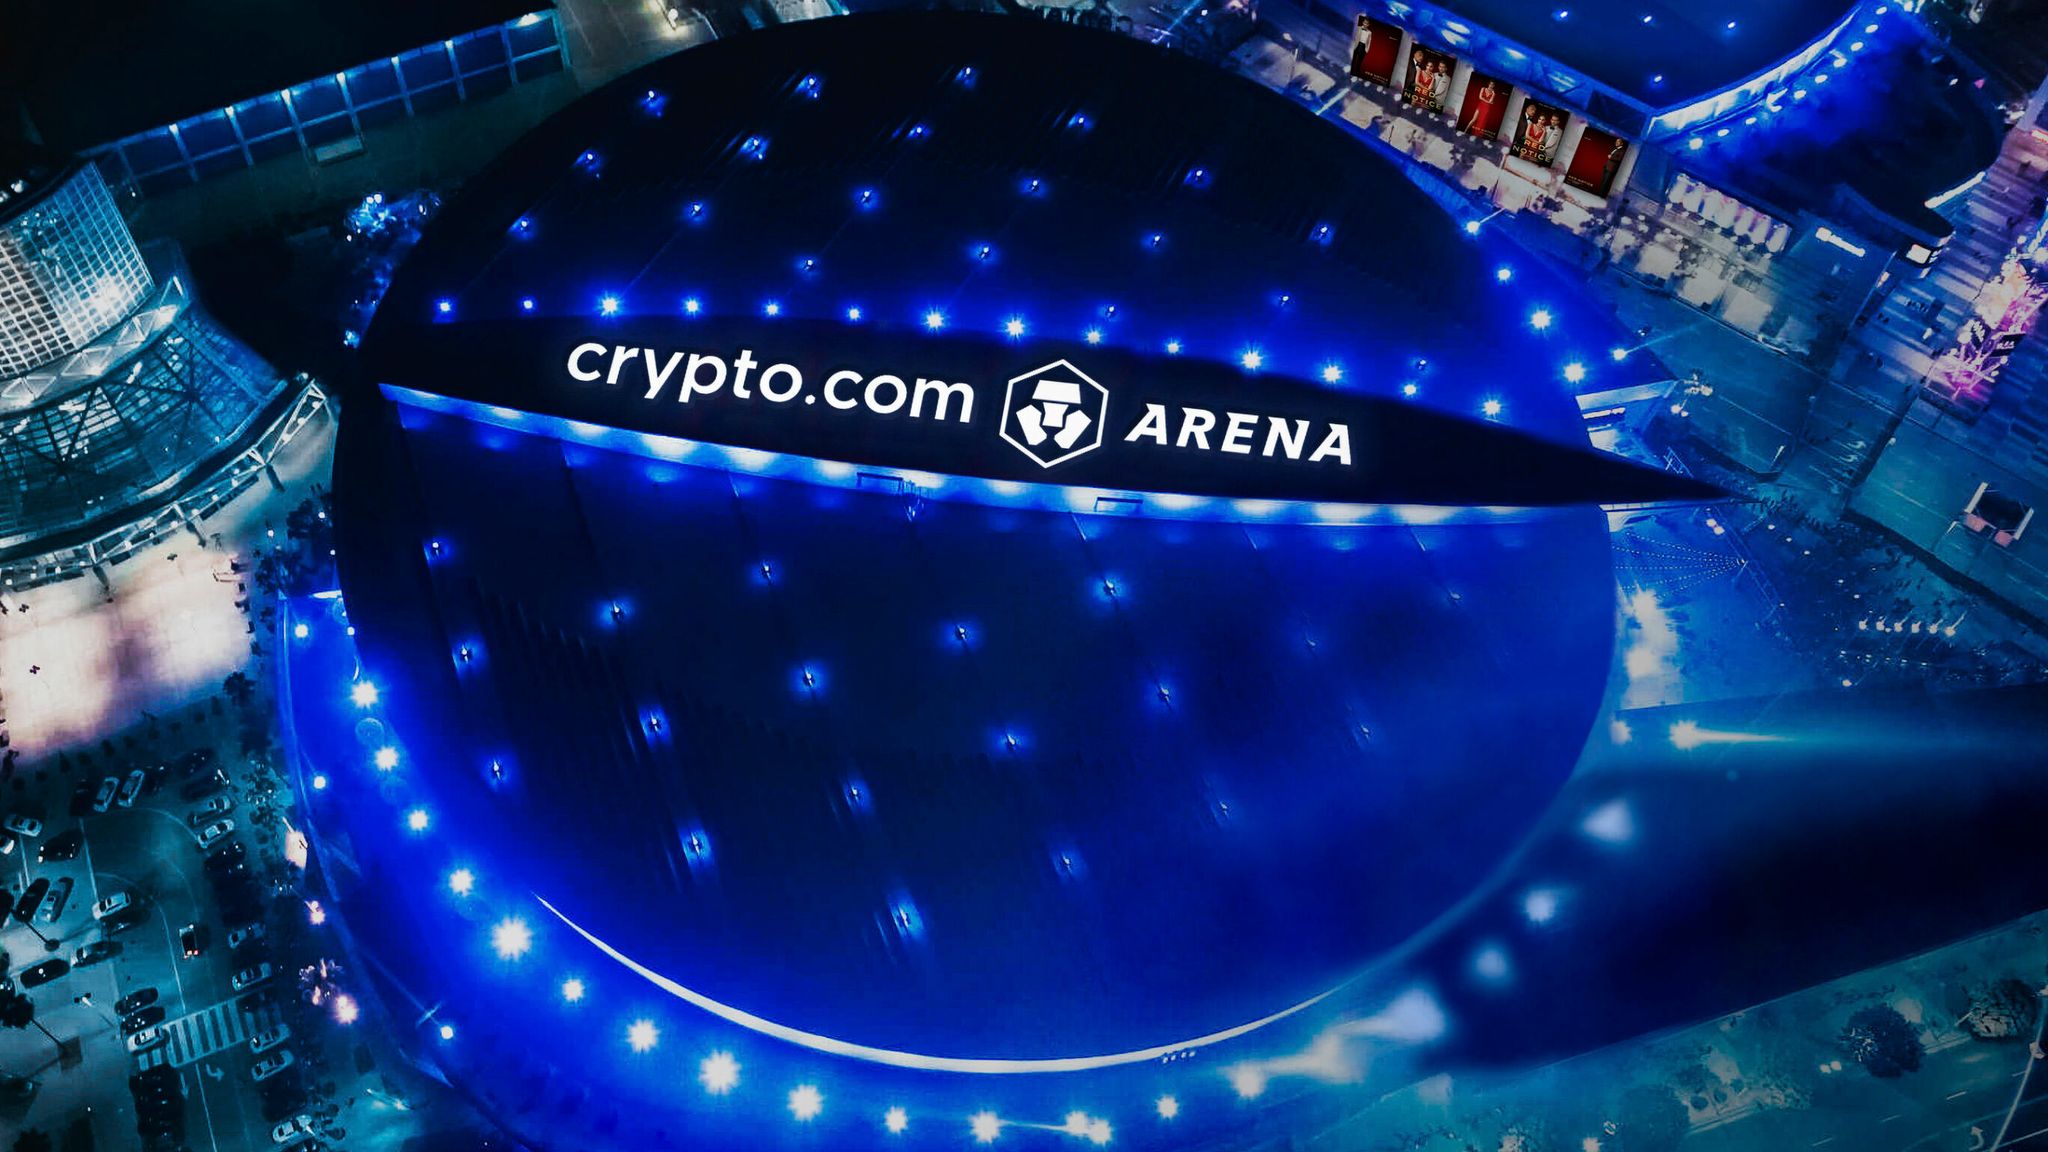 crypto stadium name